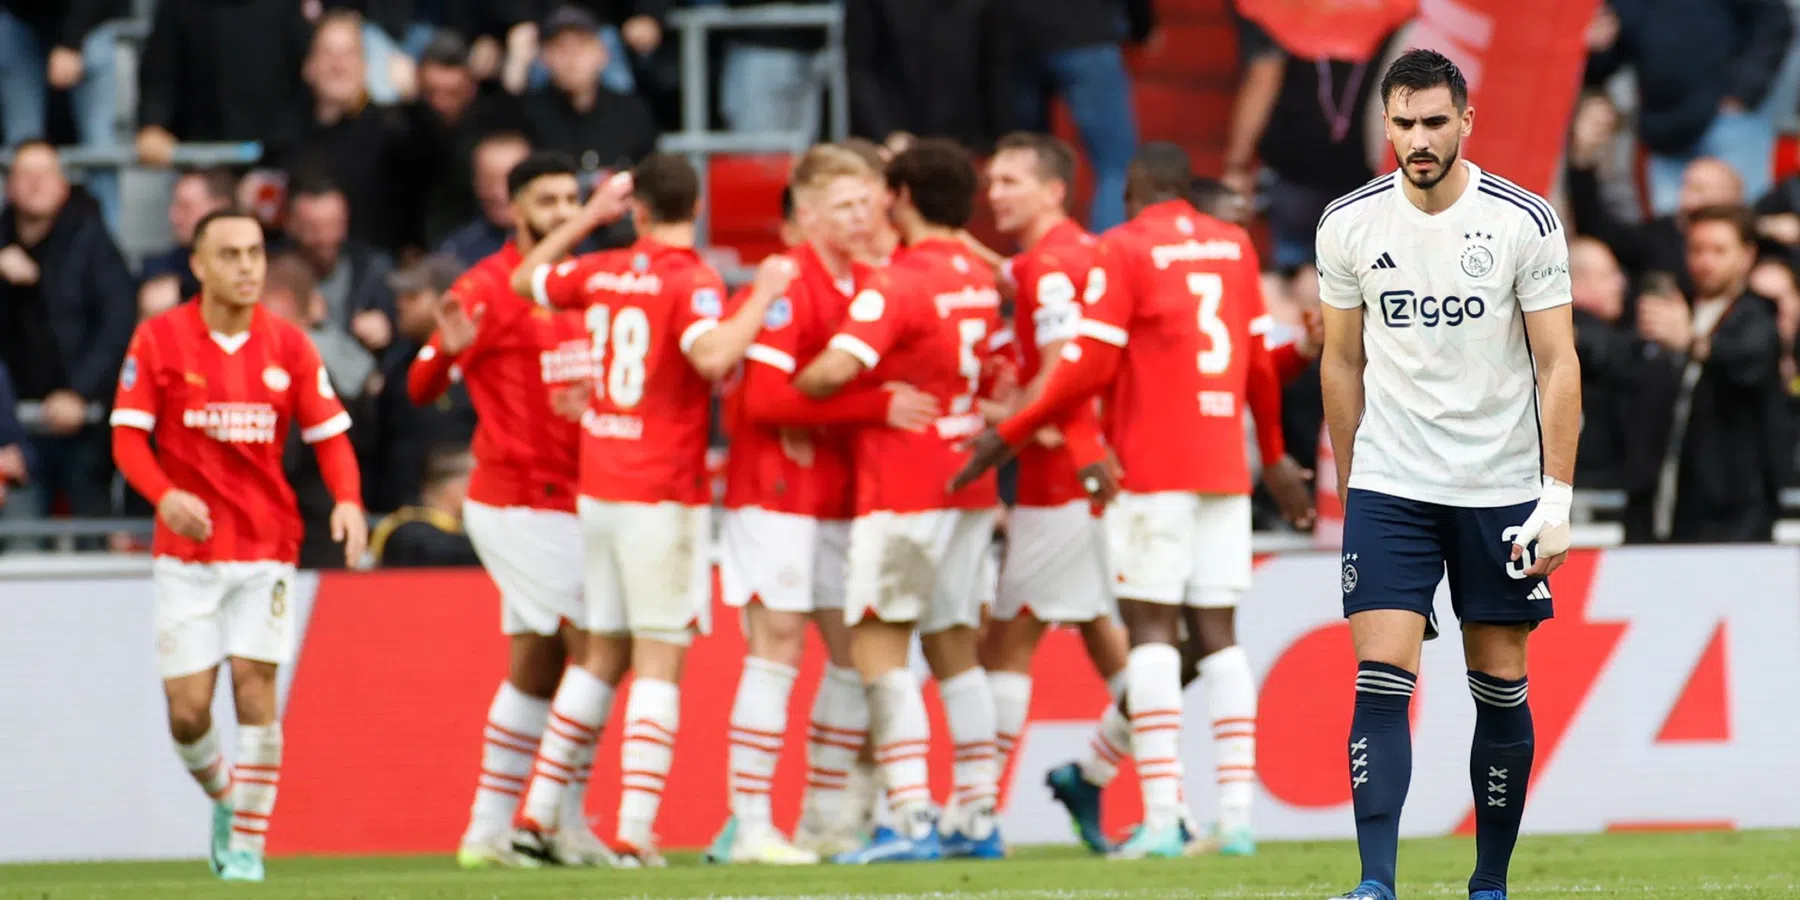 Greep uit reacties op X na historische nederlaag Ajax bij PSV